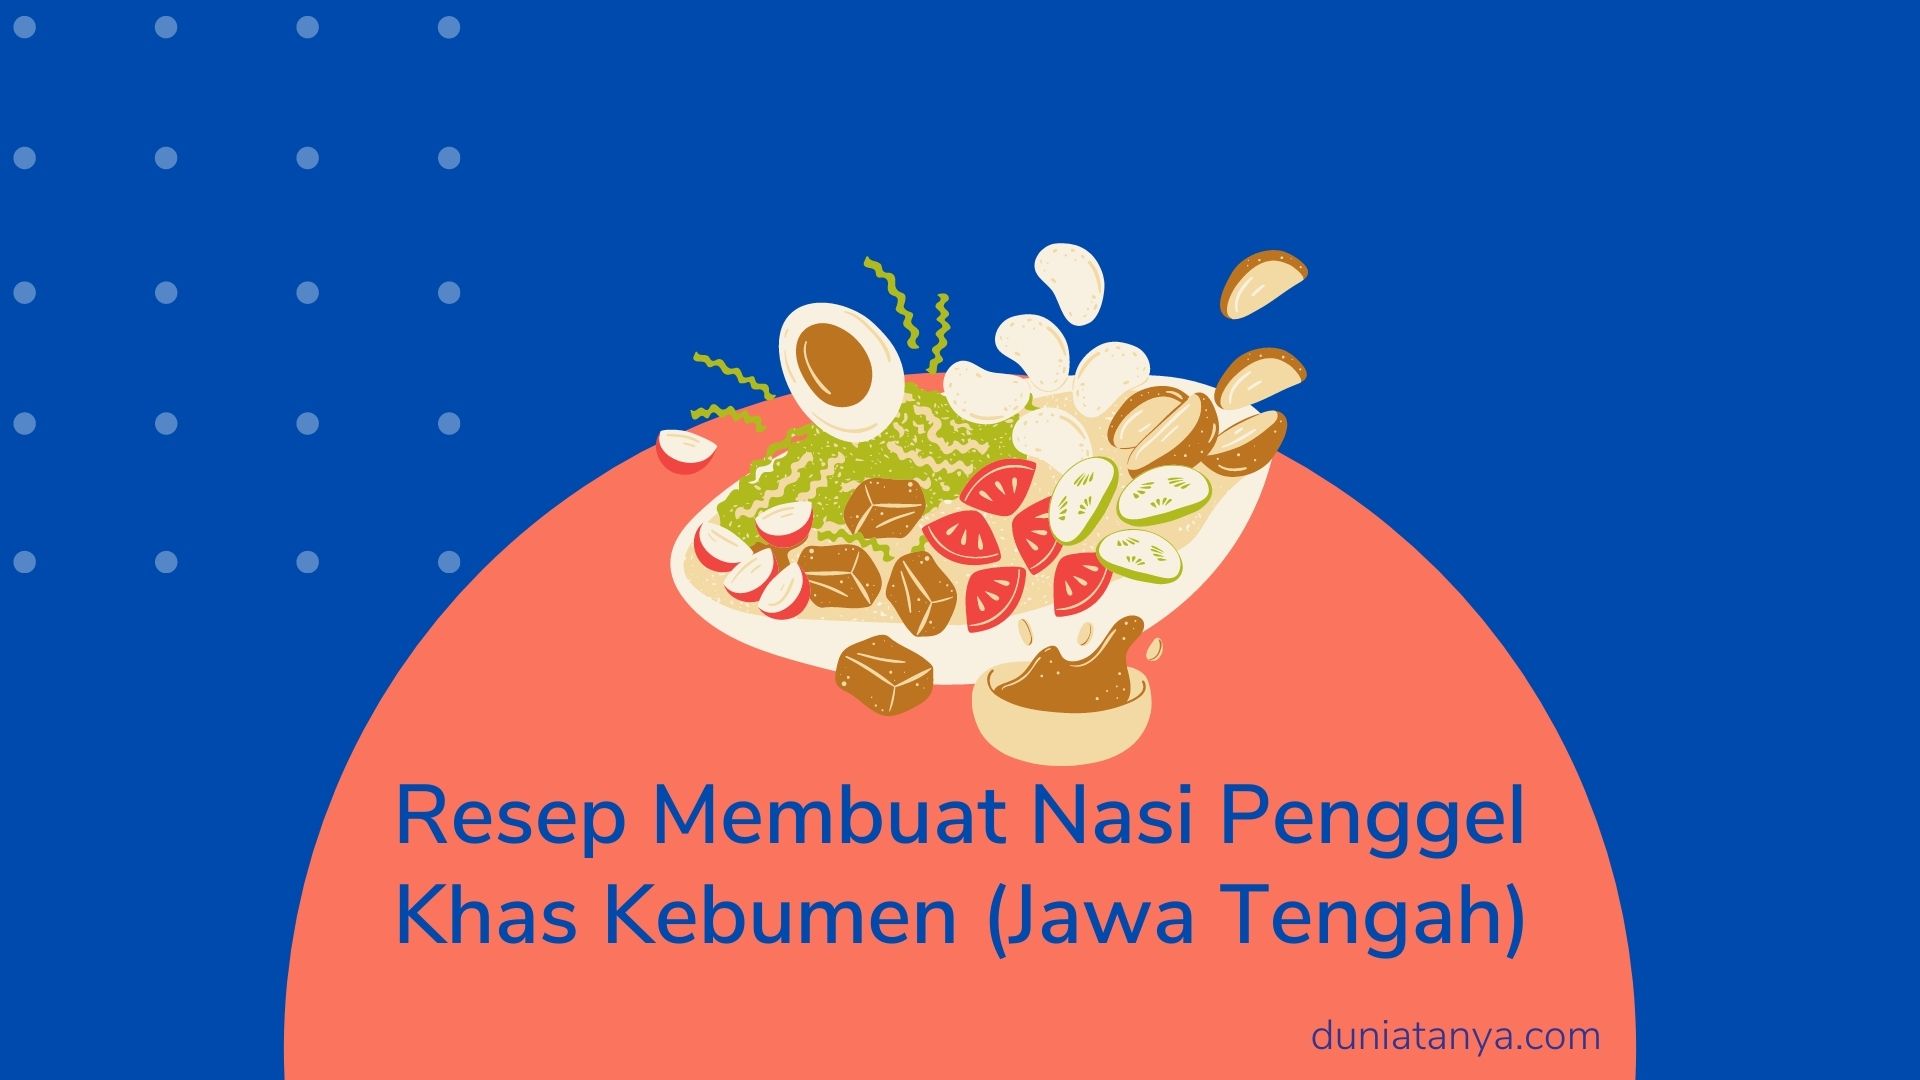 You are currently viewing Resep Membuat Nasi Penggel Khas Kebumen (Jawa Tengah)